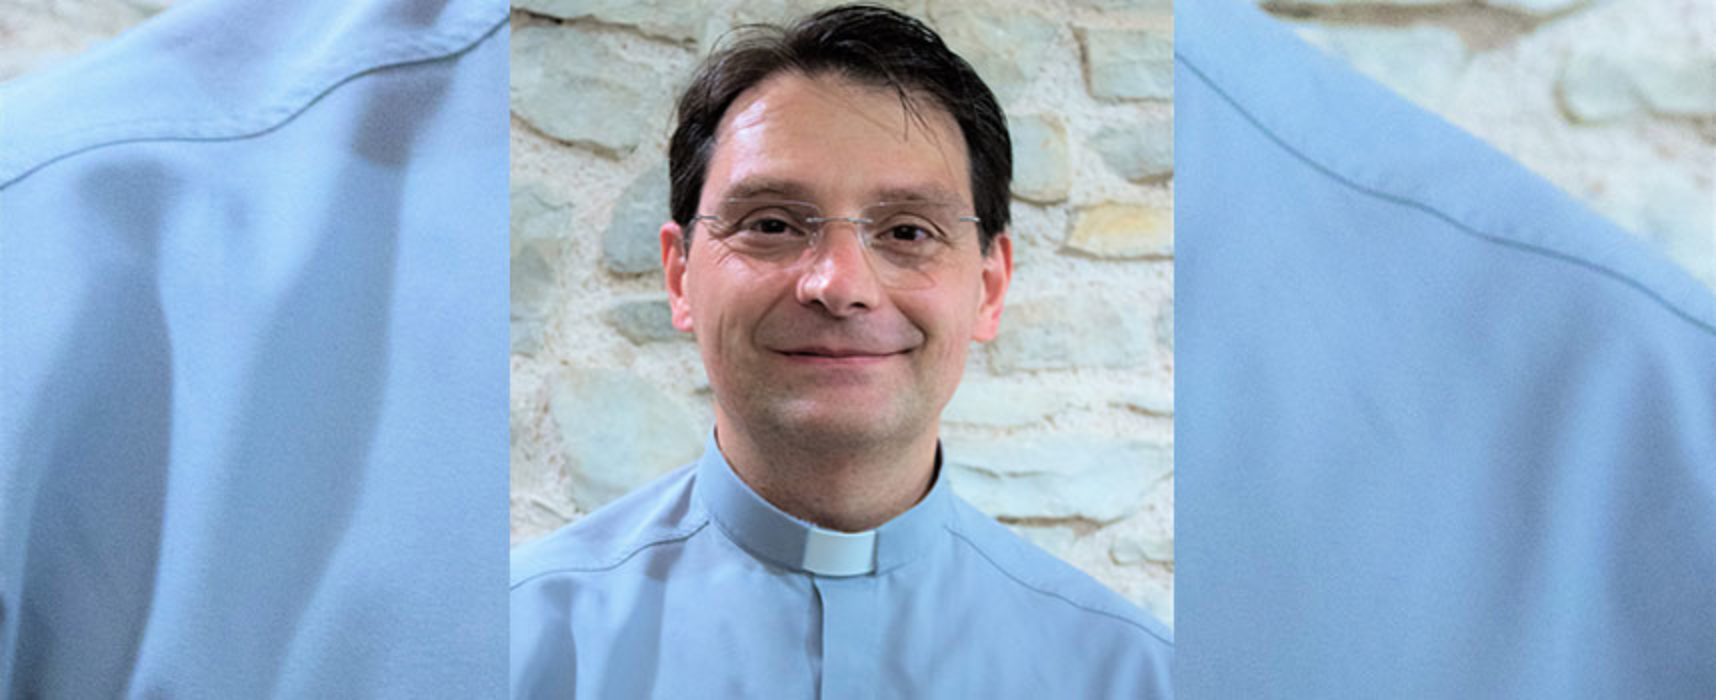 Don Sergio Pellegrini nuovo Vicario Generale Arcidiocesi: “Accolgo tutto come un segno”